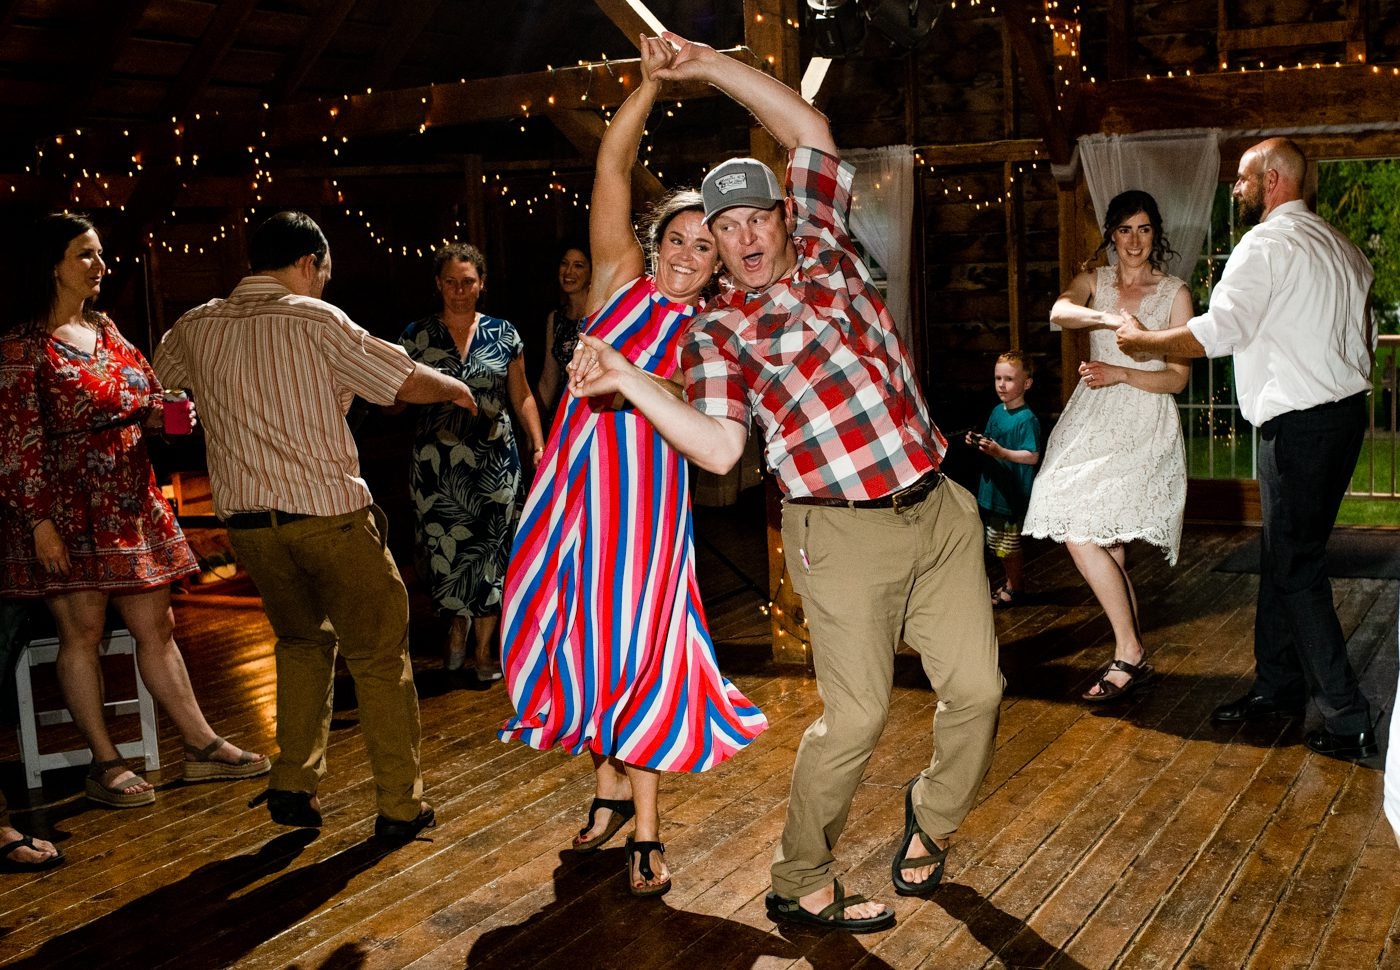 Roys-Barn-Wedding-Reception-Guests-Dancing-Twirl